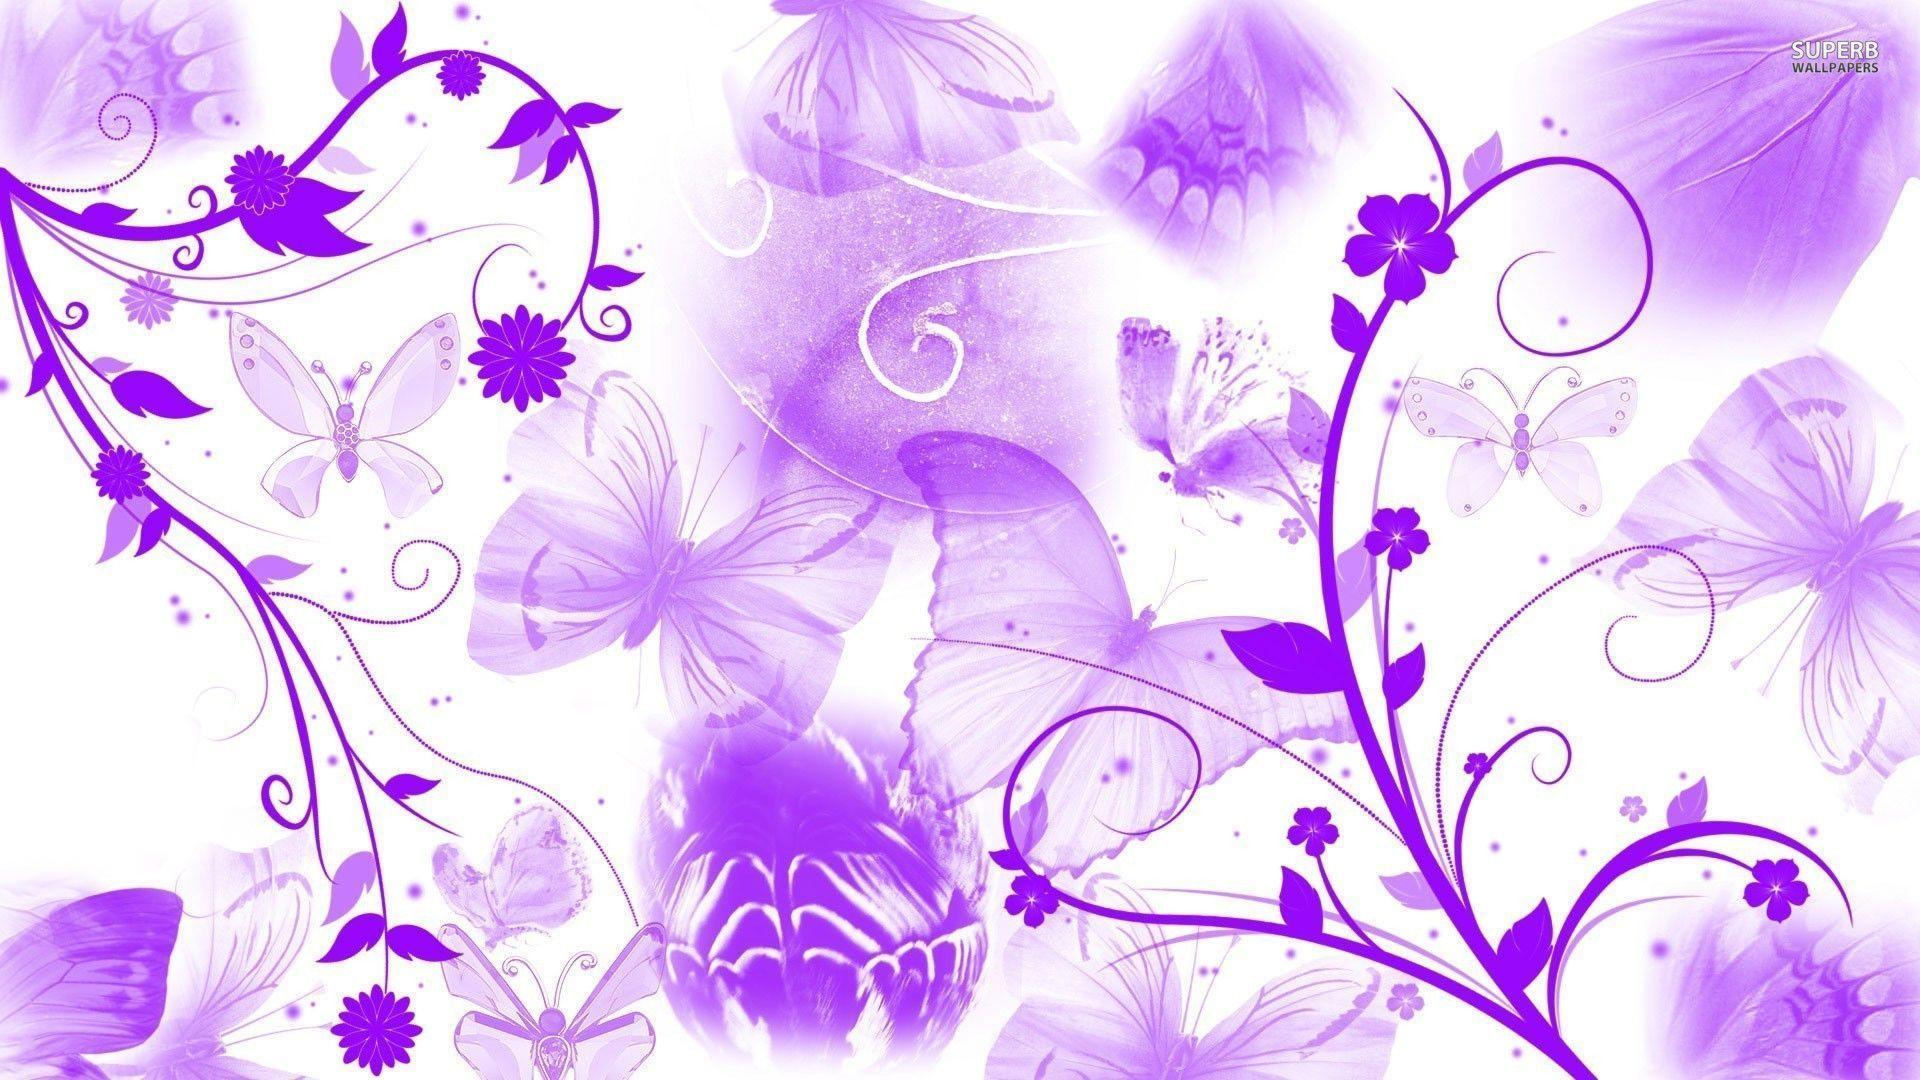 Purple butterflies and swirling flowers wallpaper Art